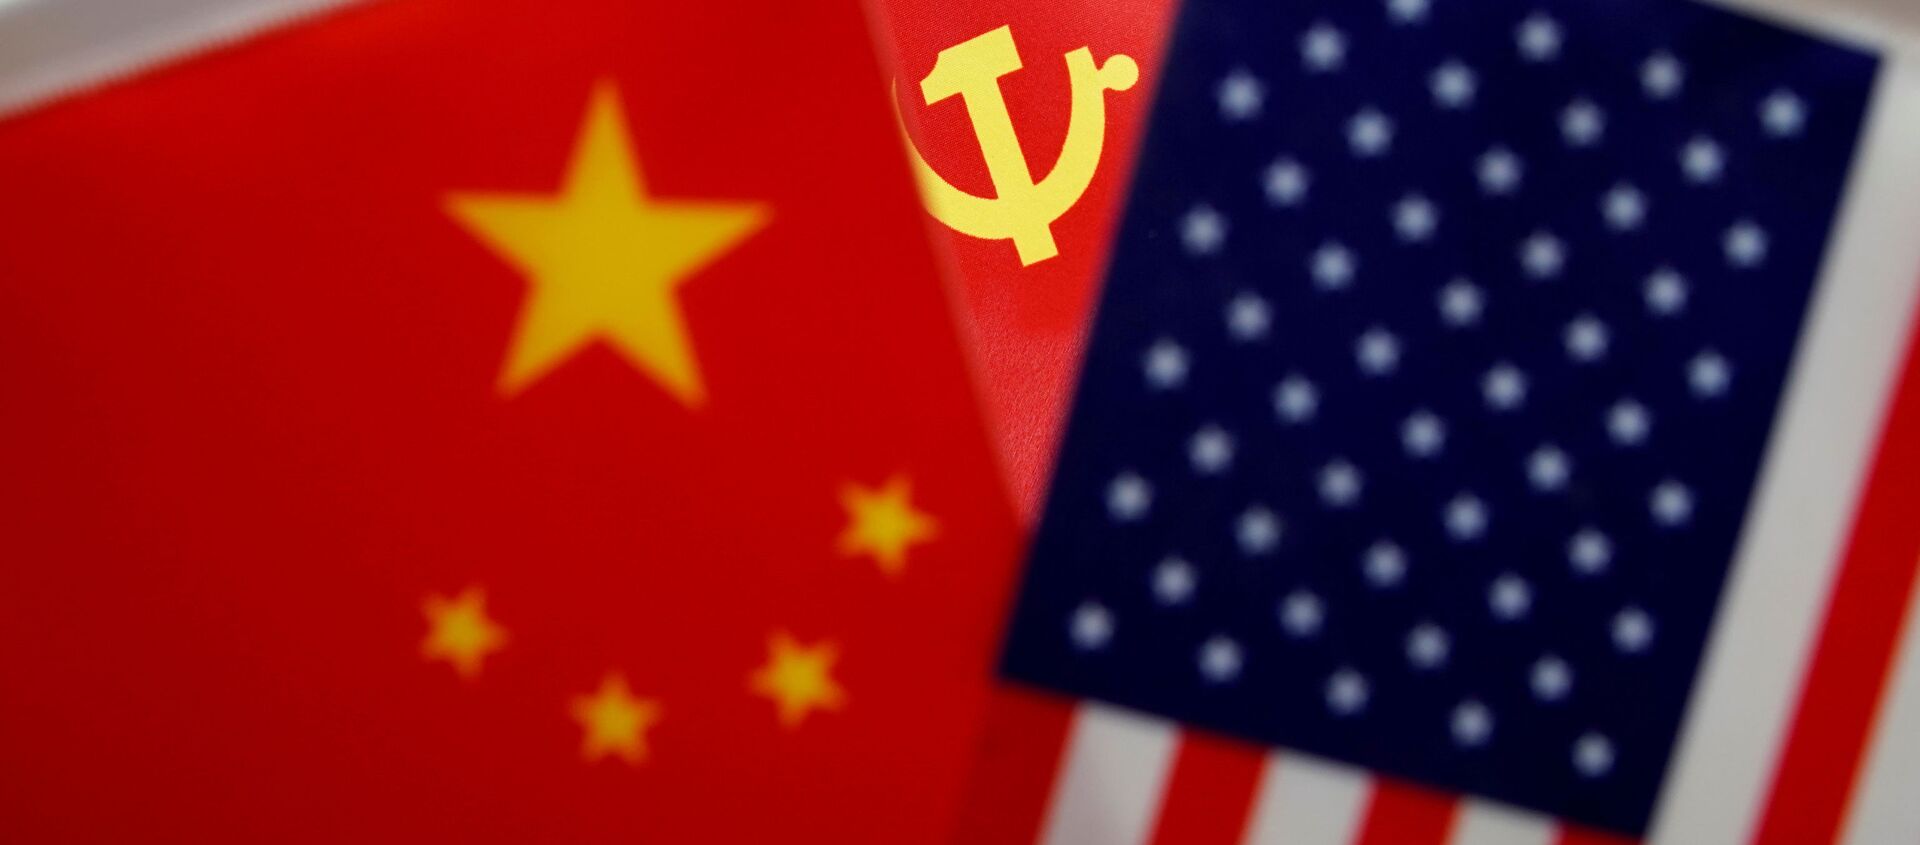 Las banderas de China, el partido comunista chino y EEUU - Sputnik Mundo, 1920, 11.01.2021